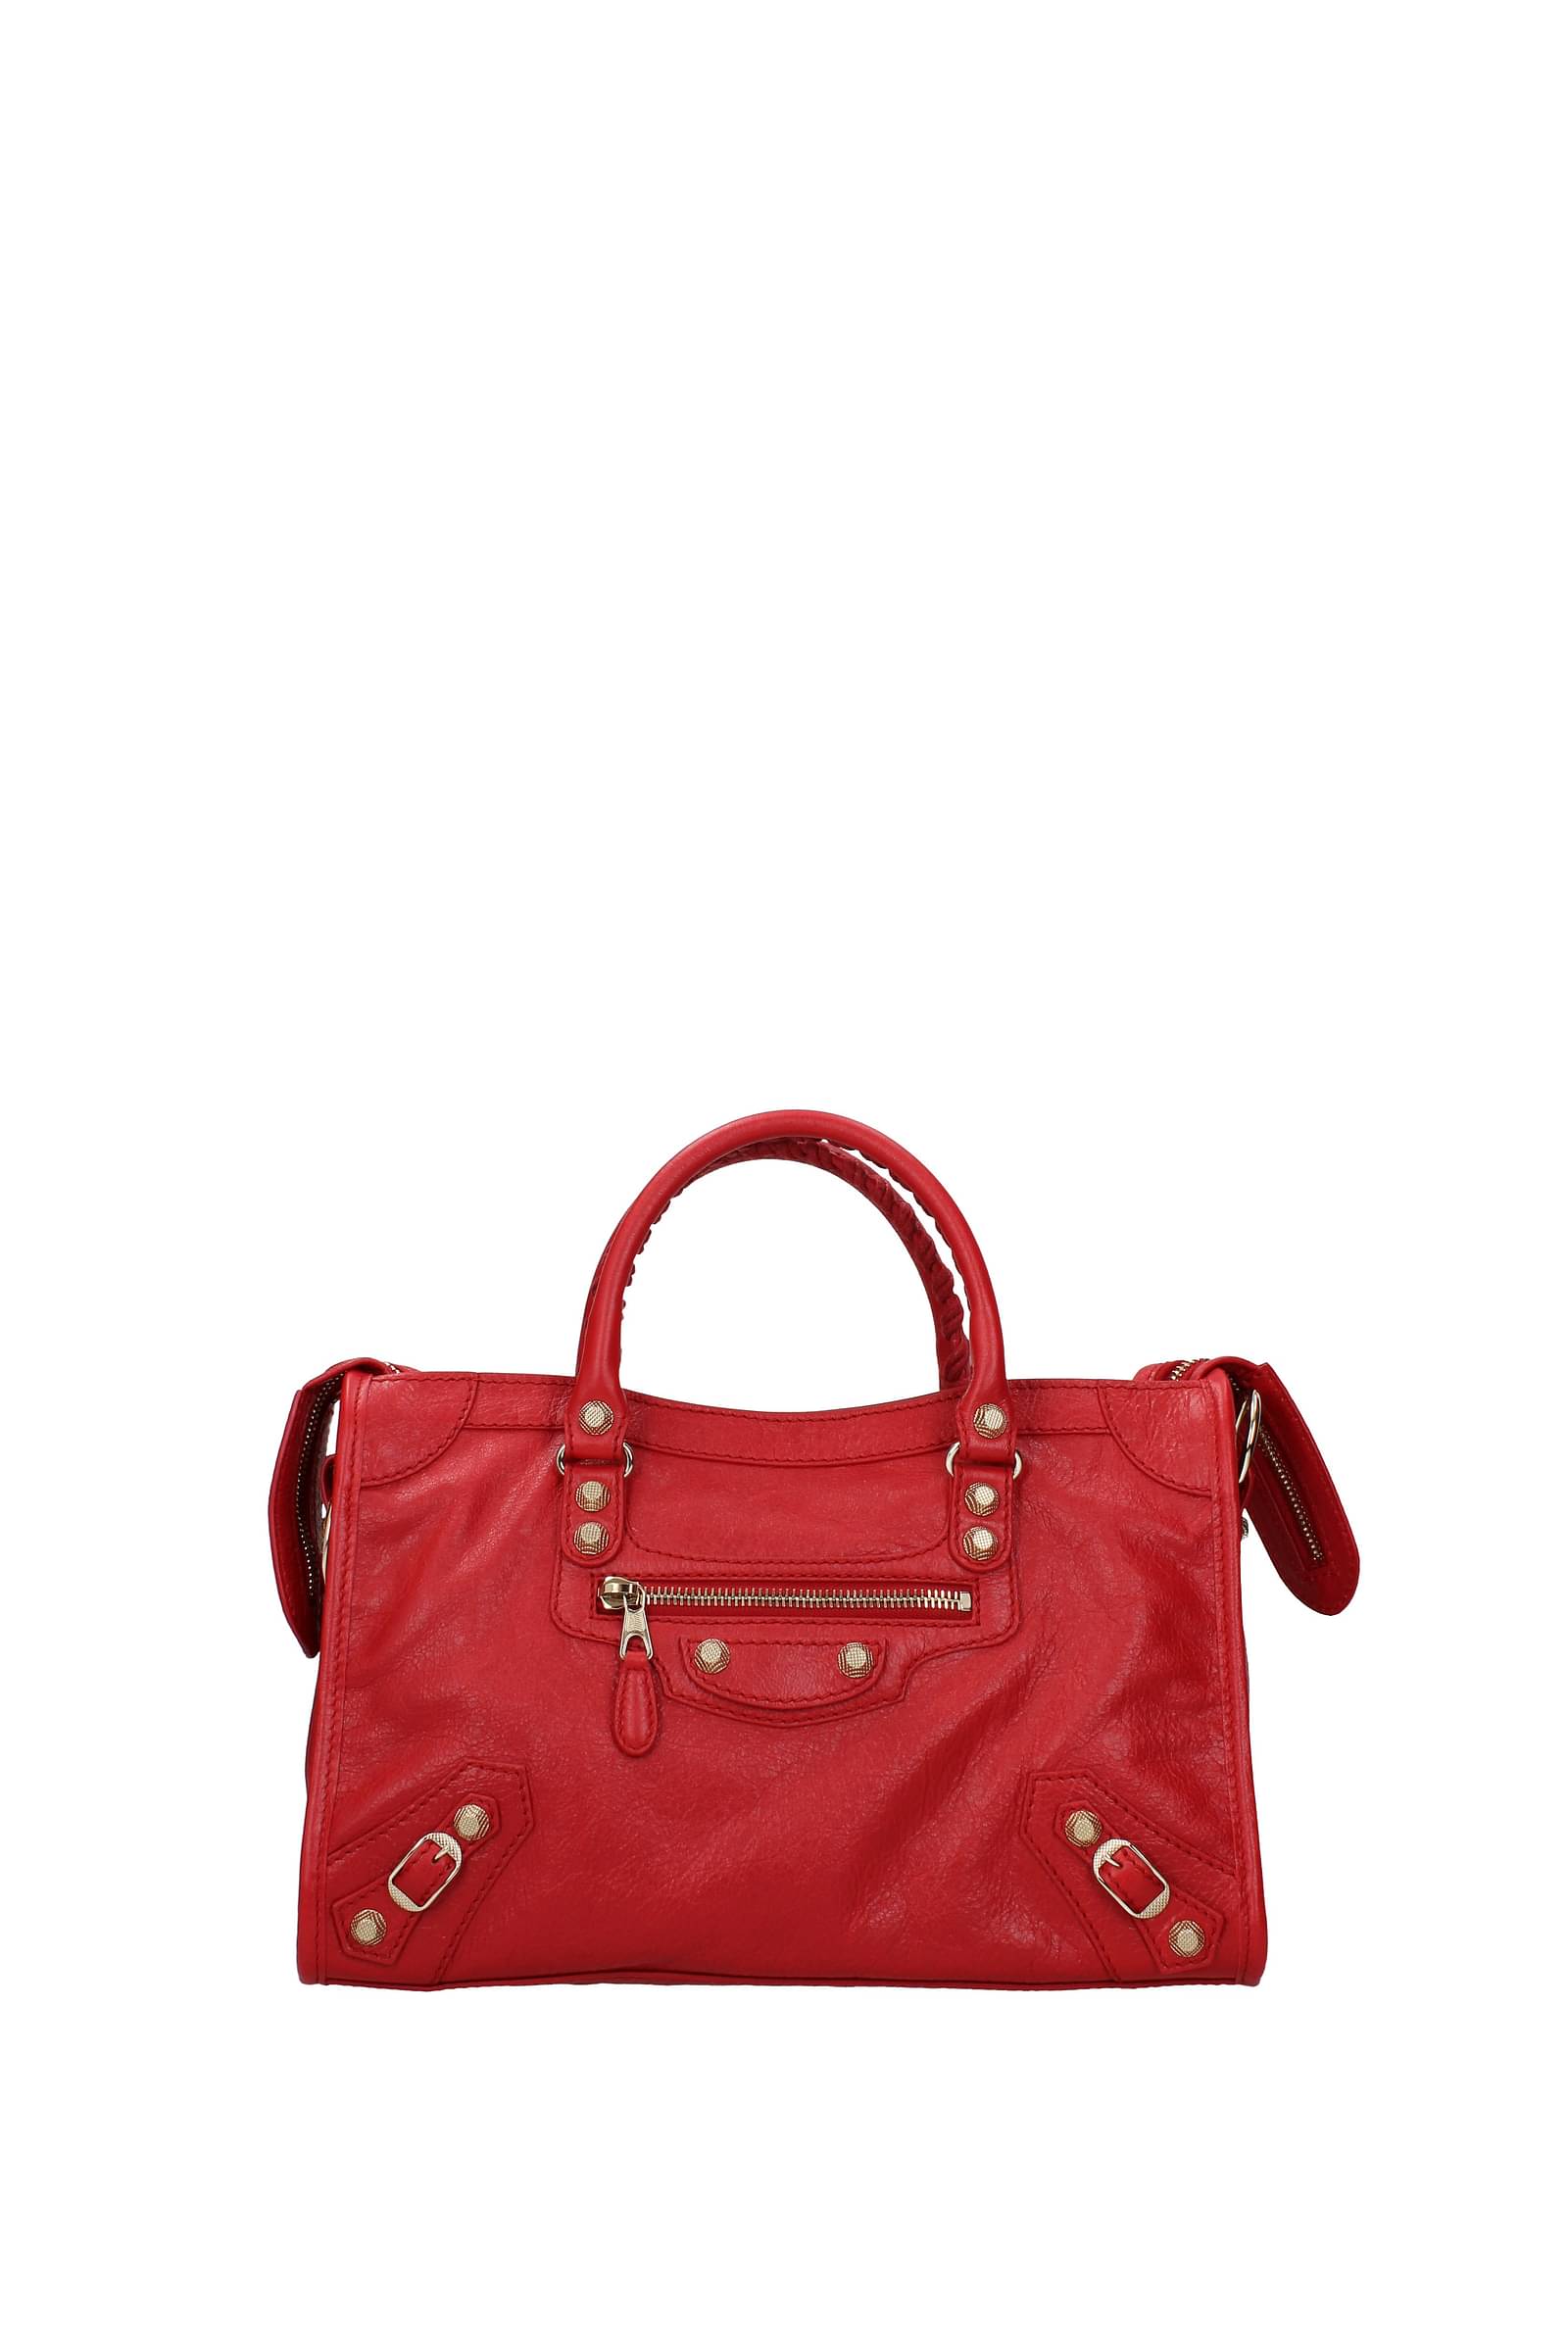 Balenciaga Handbags city Women Leather Red